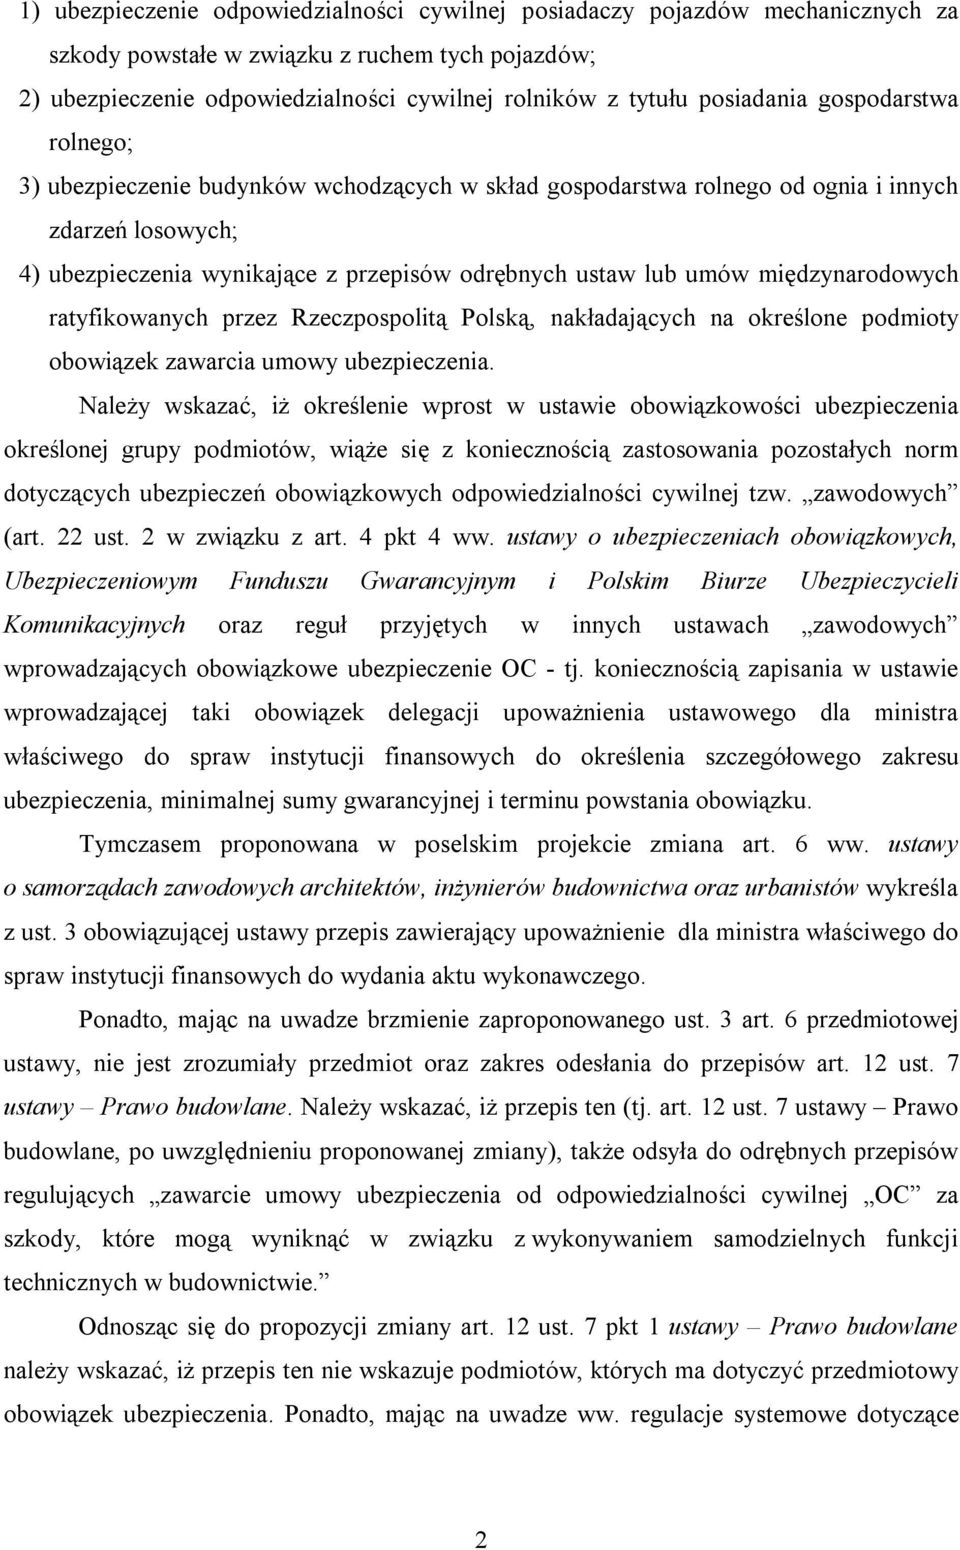 umów międzynarodowych ratyfikowanych przez Rzeczpospolitą Polską, nakładających na określone podmioty obowiązek zawarcia umowy ubezpieczenia.